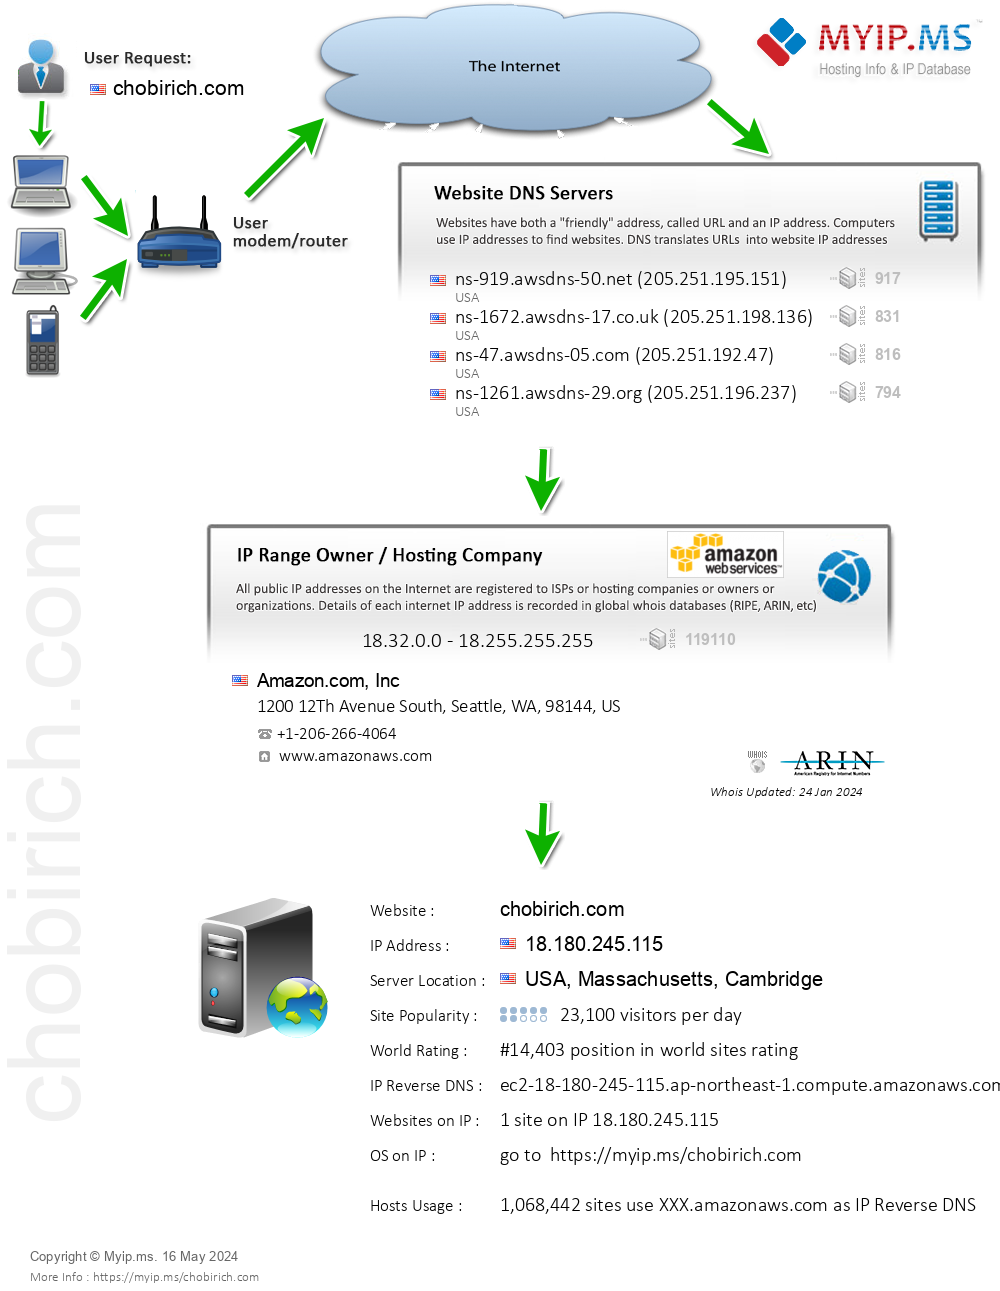 Chobirich.com - Website Hosting Visual IP Diagram